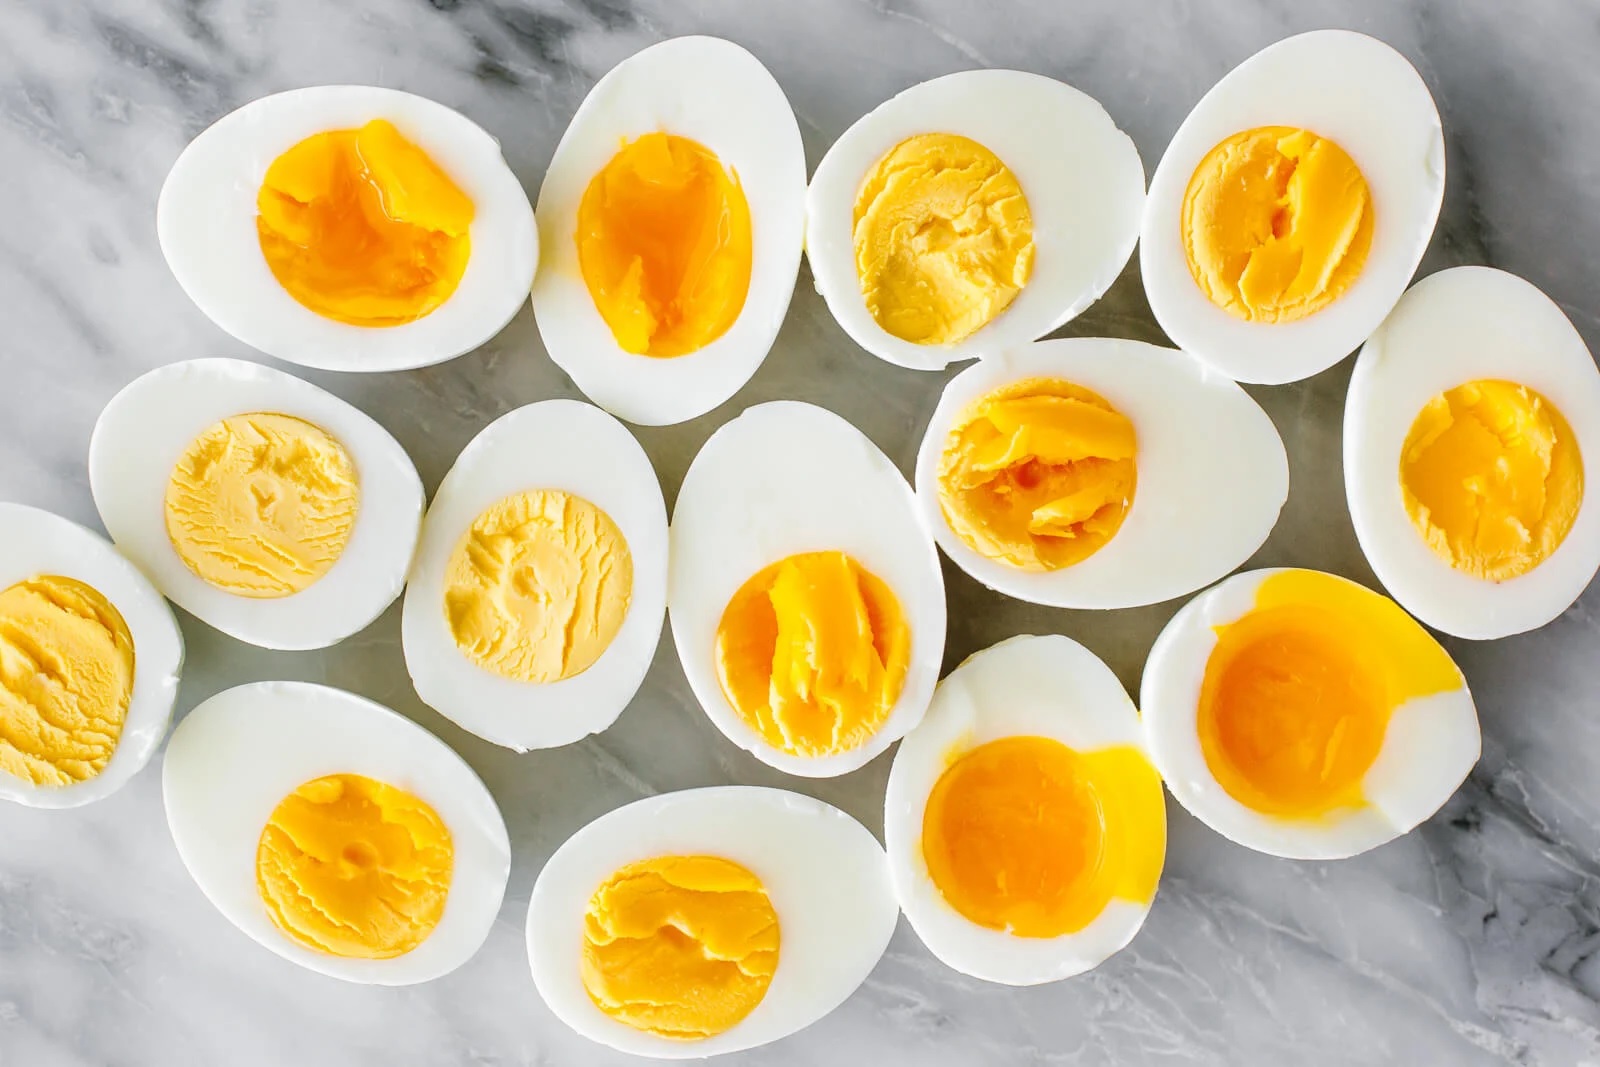 Trứng là một trong những thực phẩm giàu chất béo